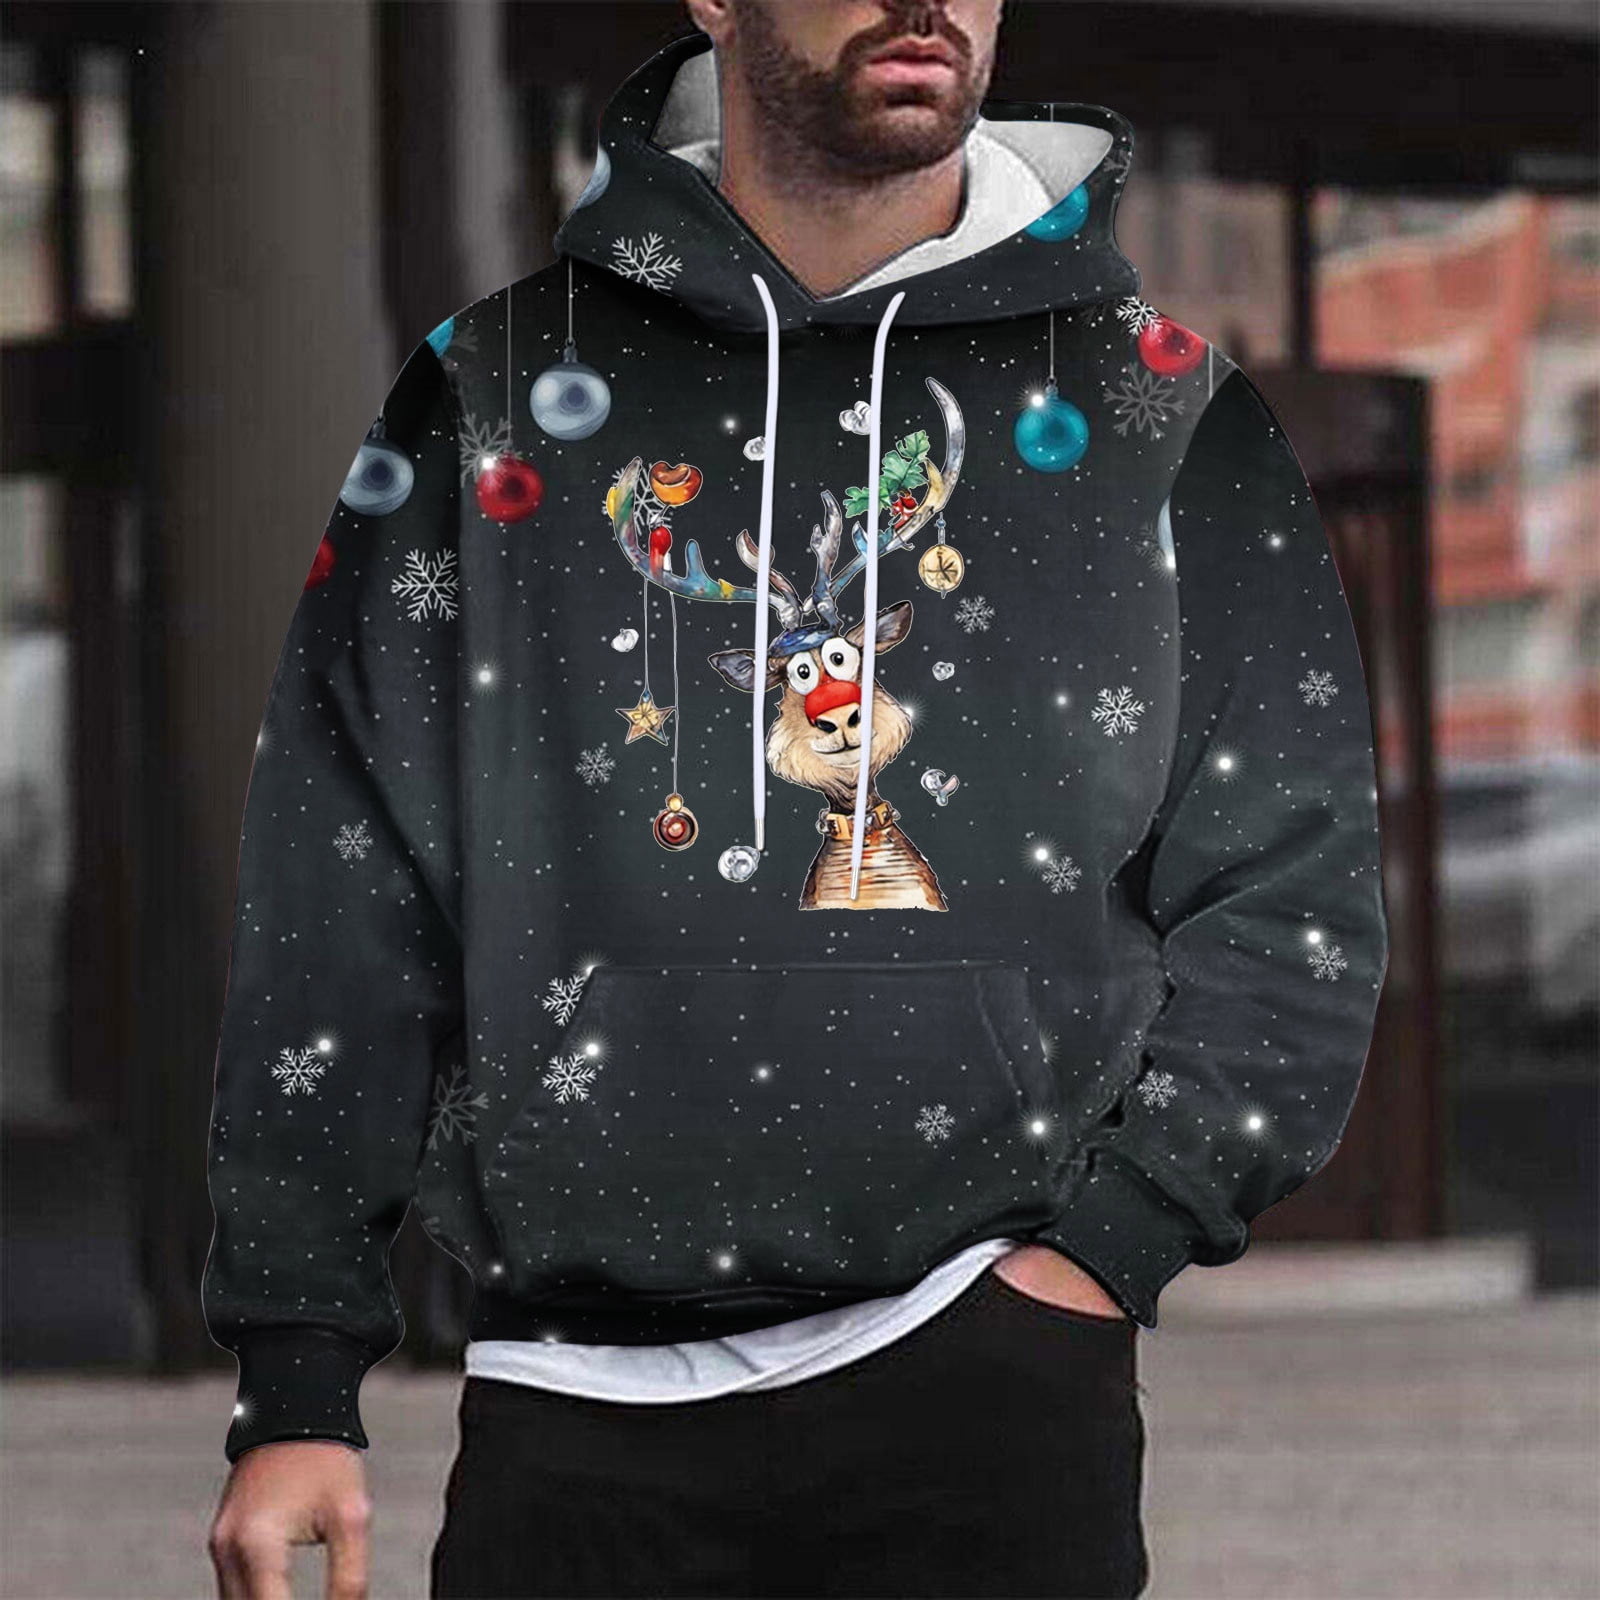 Mens Ugly Christmas Hoodies,Men Christmas Ugly 3D Printed Graphic Long  Sleeve Hoodies,Plus Size Christmas Sweatshirt for Men Xmas Tree Loose Fit Sweatshirts  Hoodie 